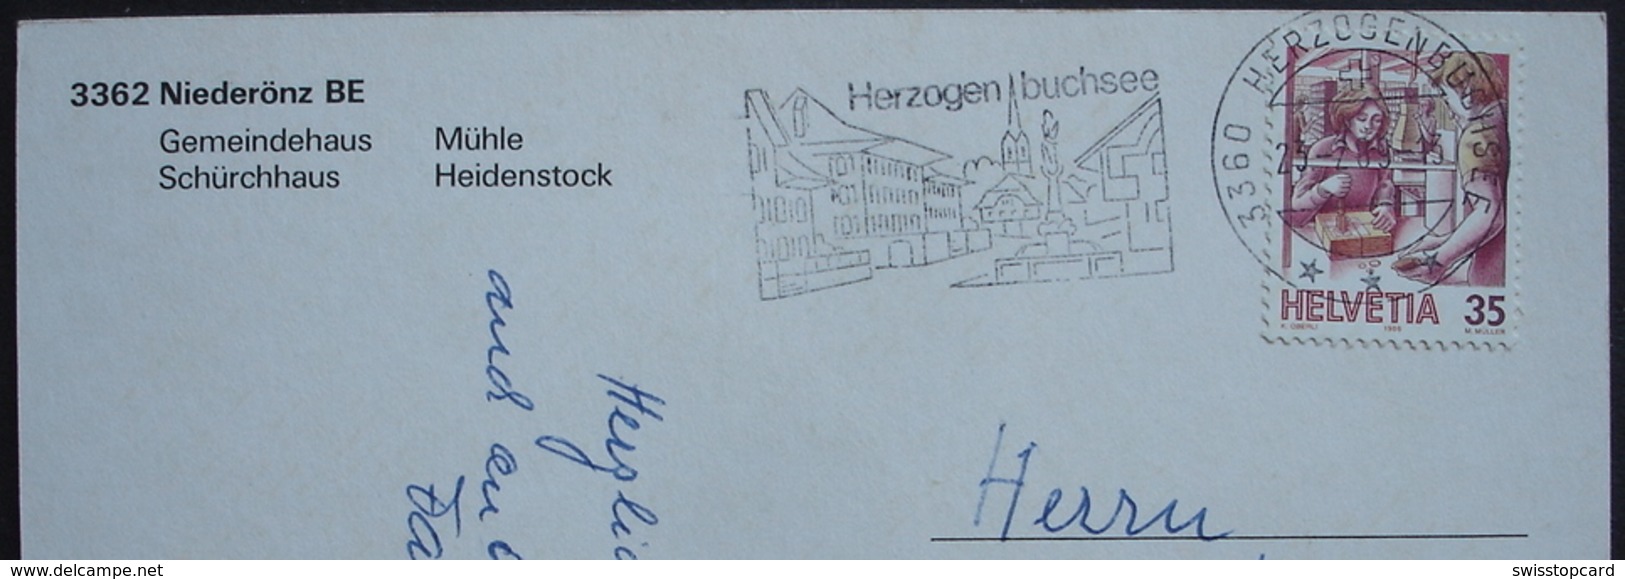 NIEDERÖNZ BE Gemeindehaus Mühle Schürchhaus Heidenstock Auto Gel. 1989 V. Herzogenbuchsee - Herzogenbuchsee